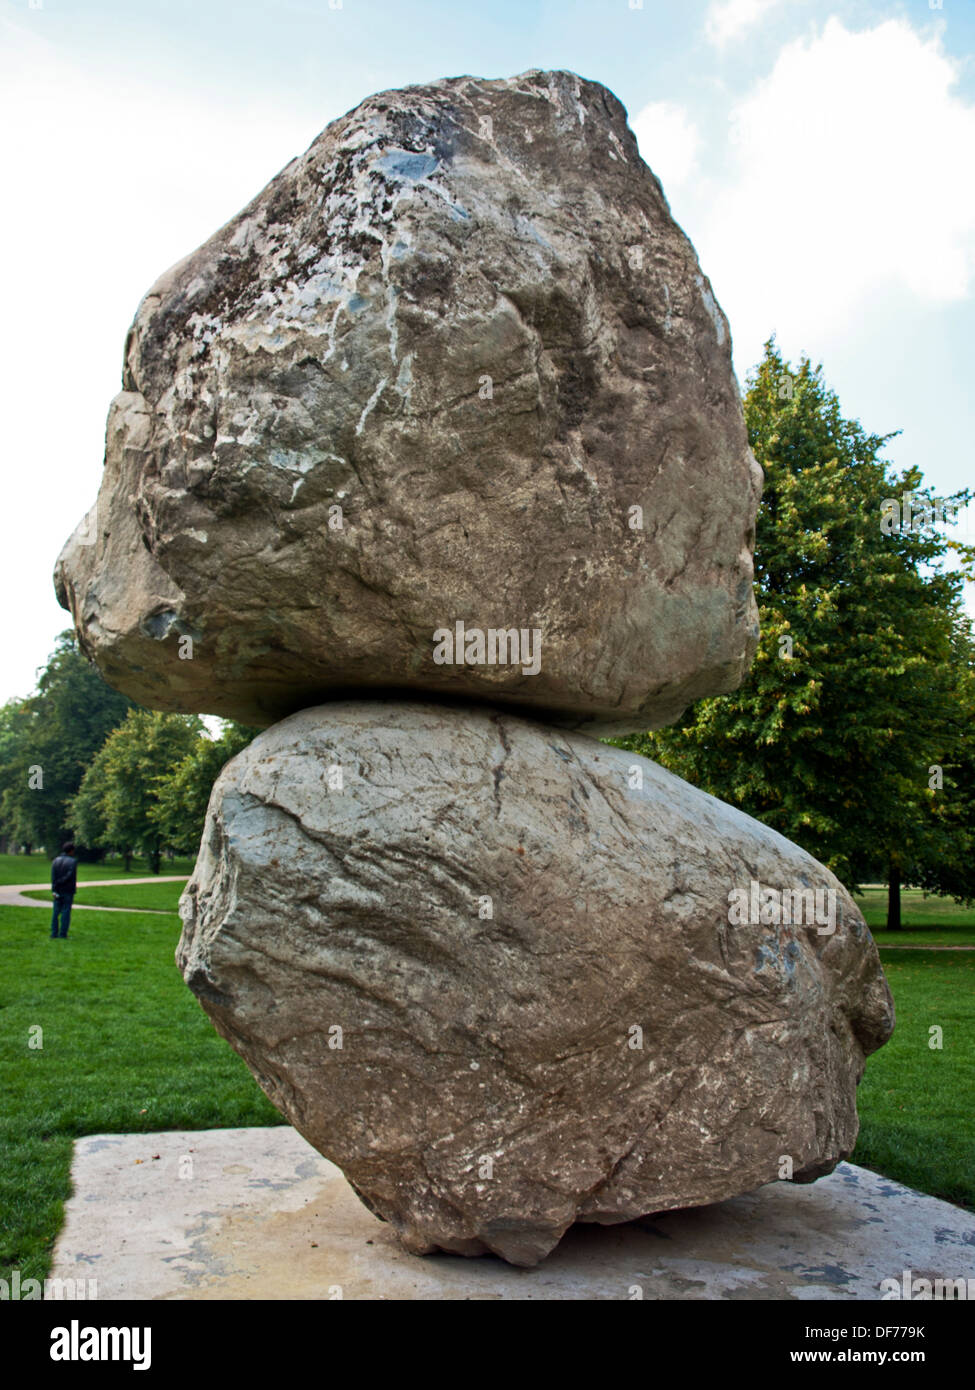 'Rock sulla parte superiore di un altro Rock' scultura di Fischli/Weiss presso la Serpentine Gallery, Kensington Gardens, Hyde Park Londra Foto Stock